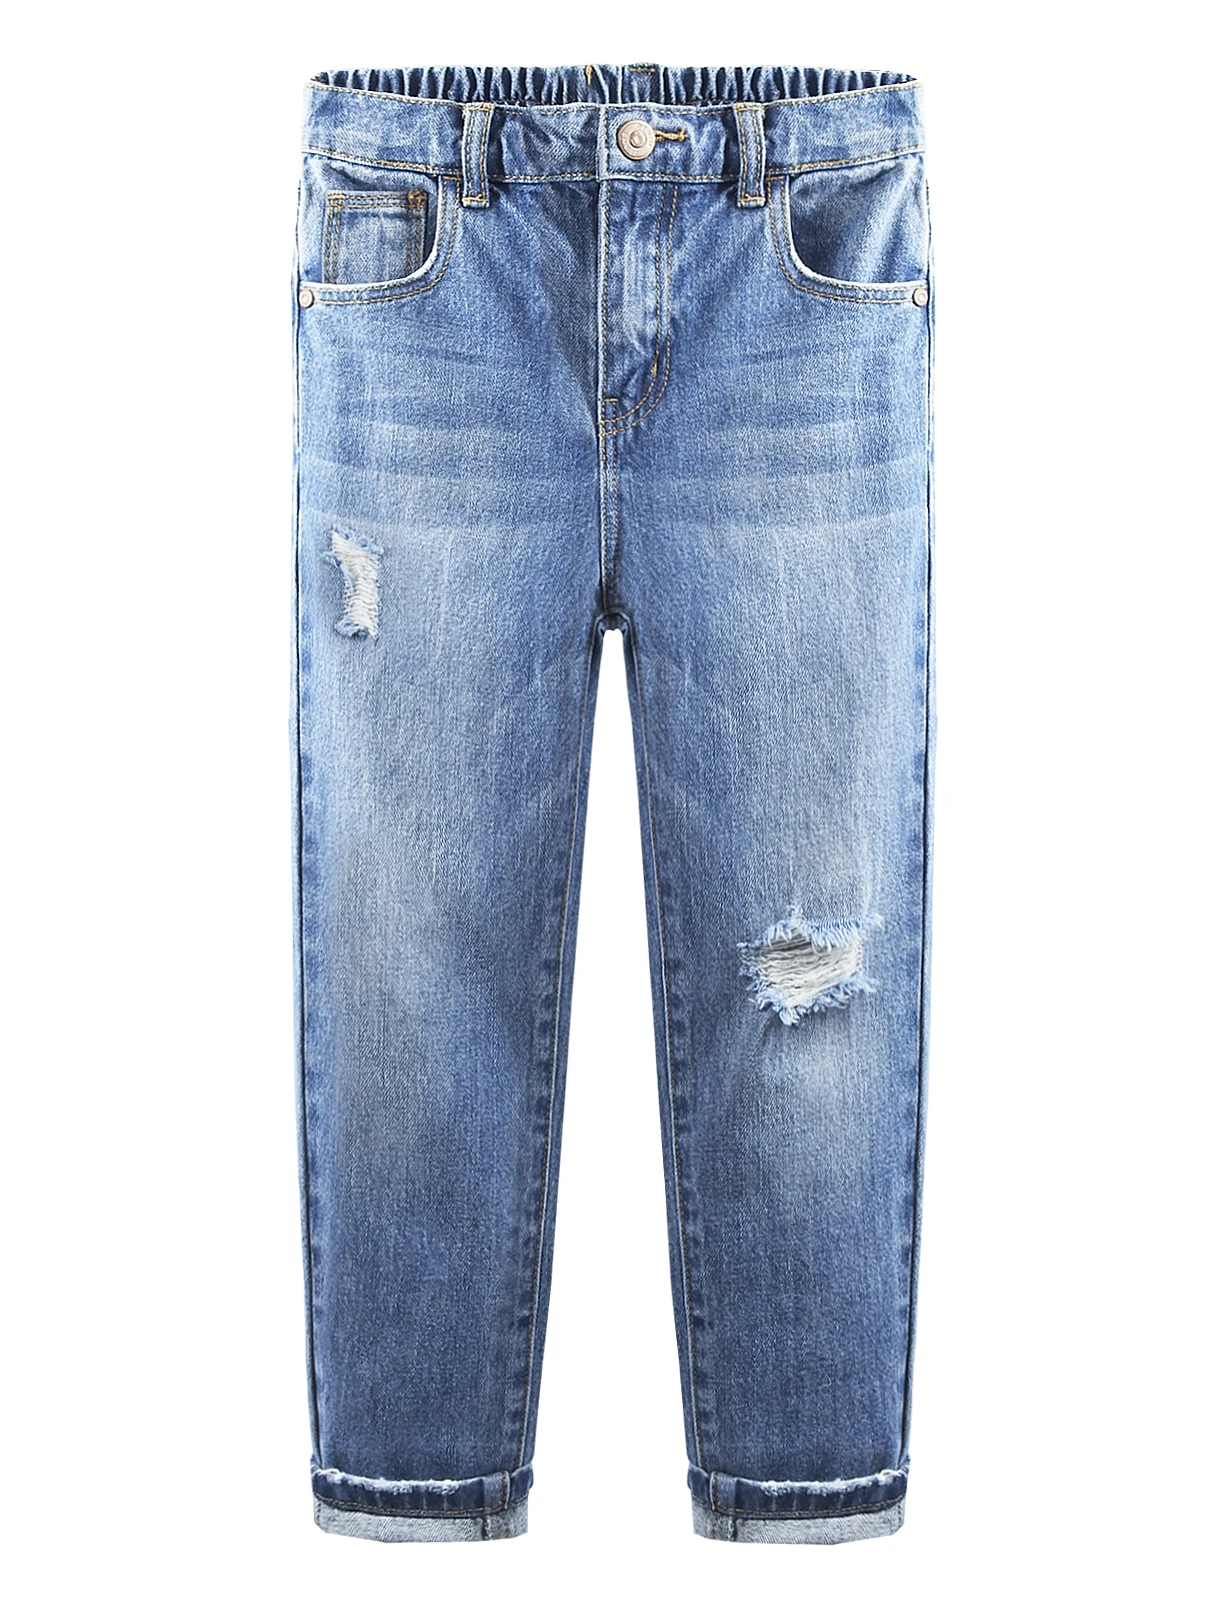 

Детские узкие джинсы Kidscool с дырками и эластичной резинкой сзади